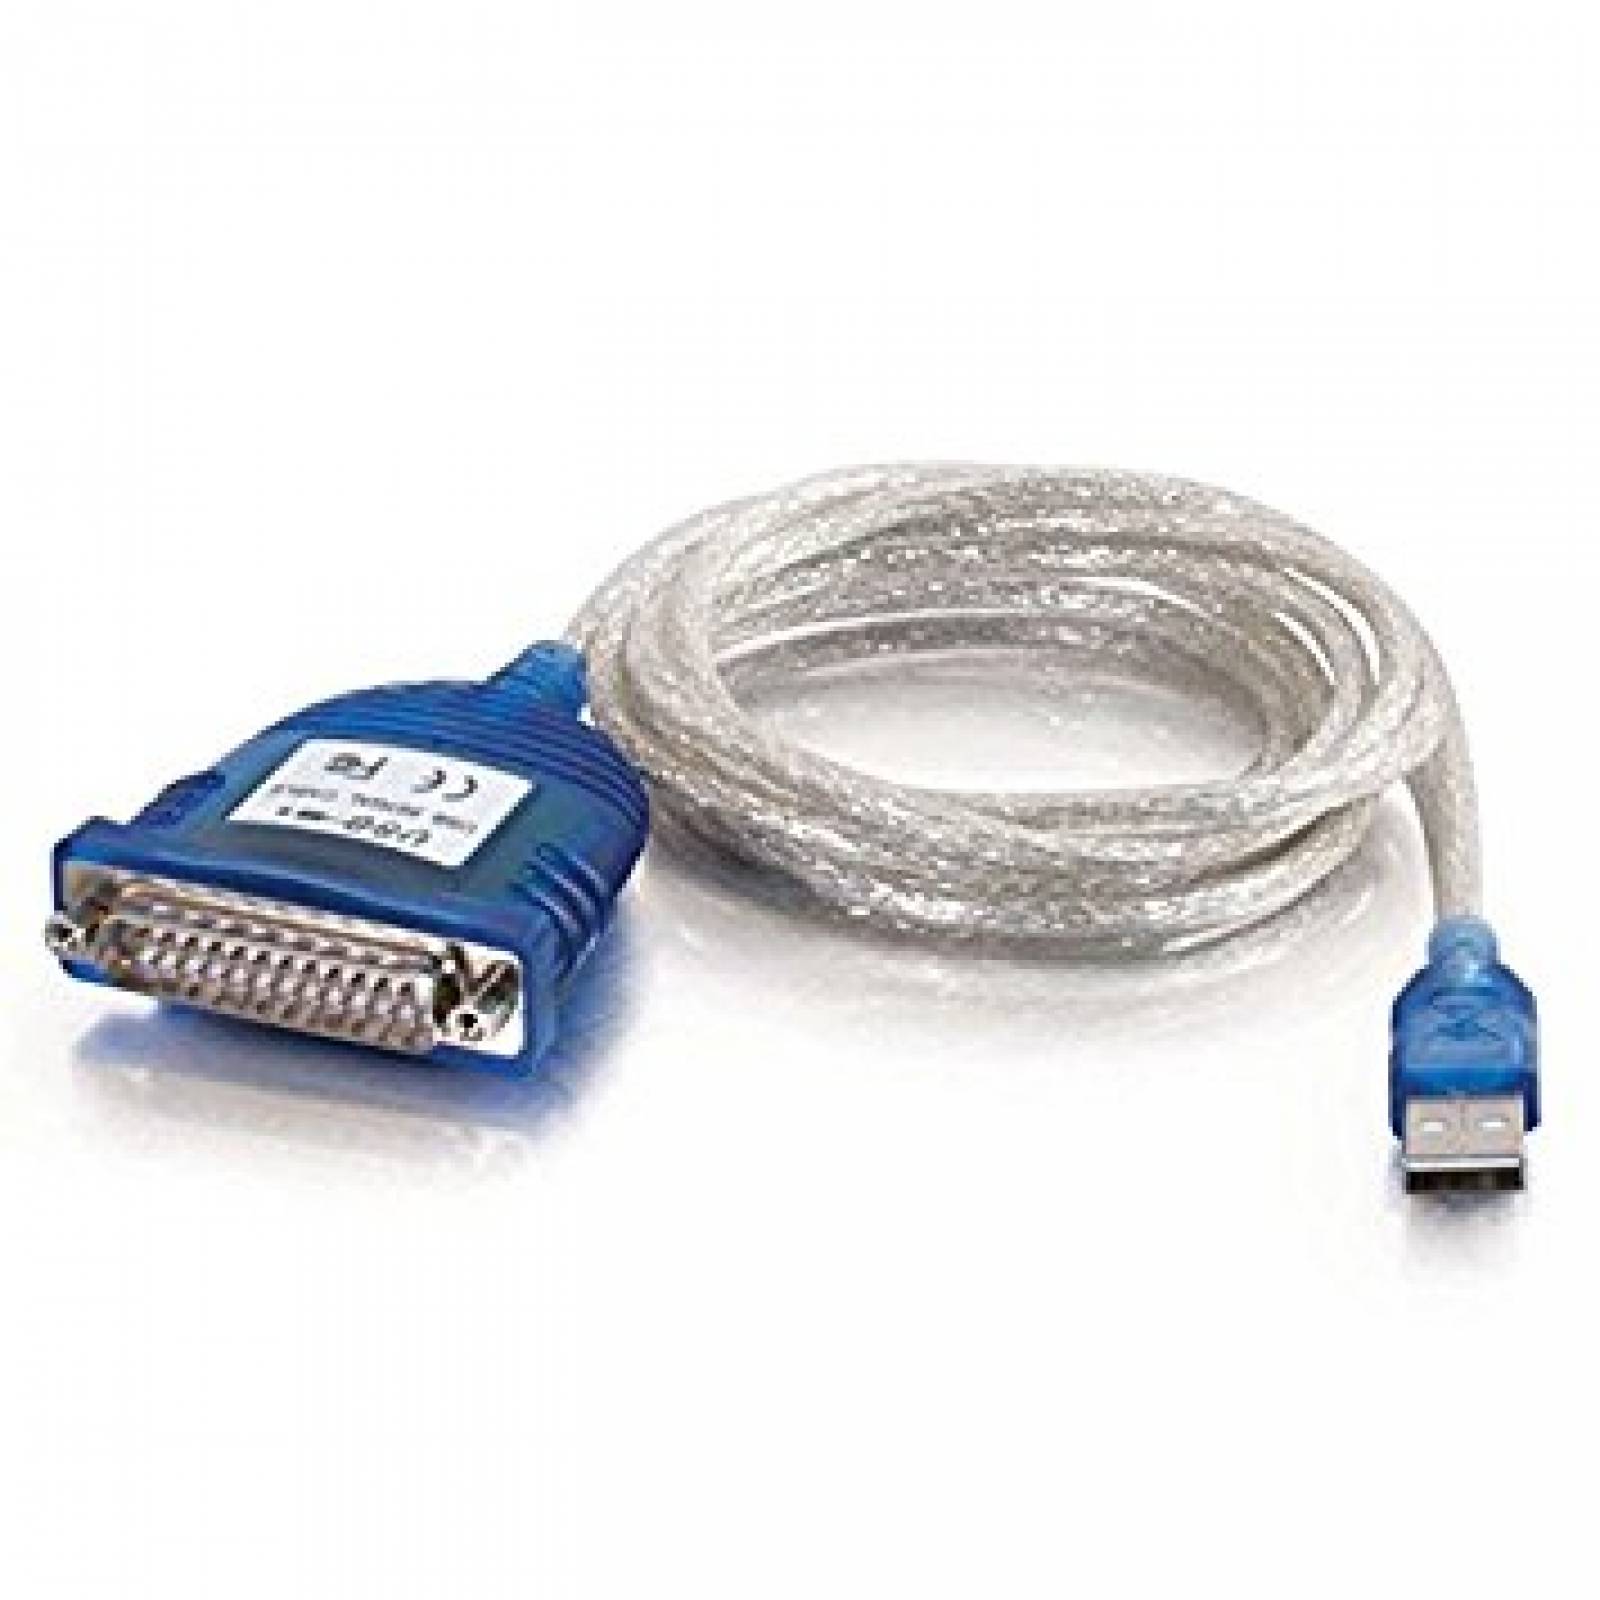 Cable Adaptador C2g Usb A Db25 Serial Rs232 1.8 Metros